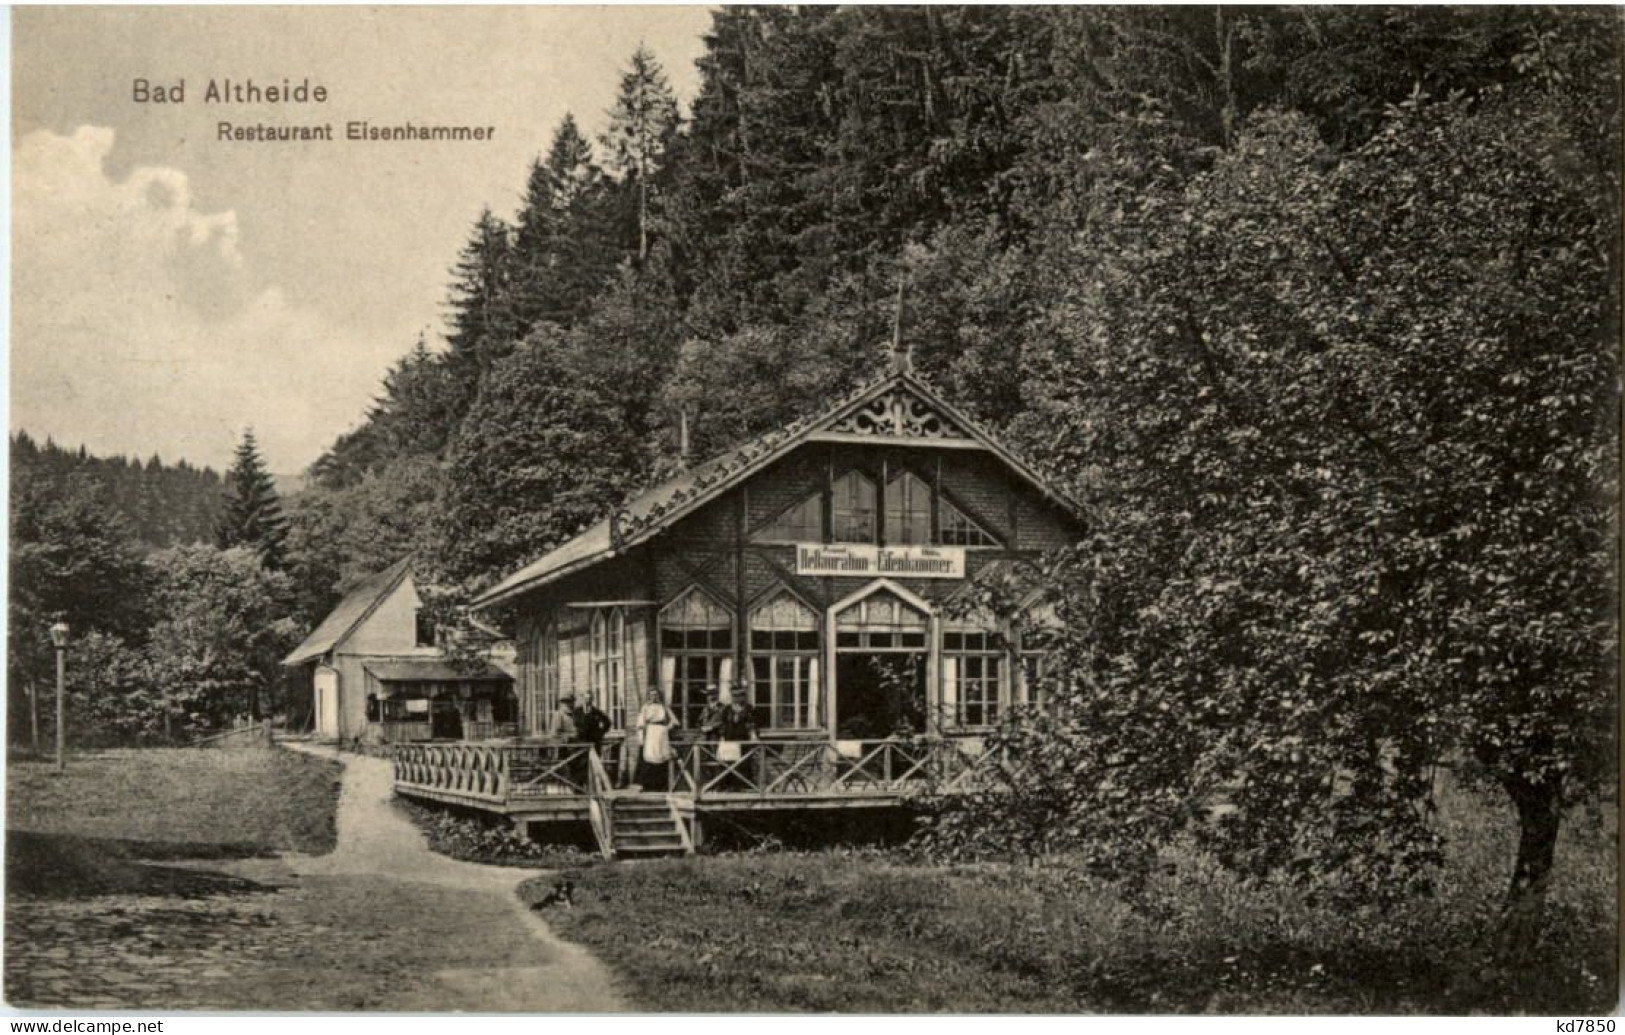 Bad Altheide - Restaurant Eisenhammer - Schlesien